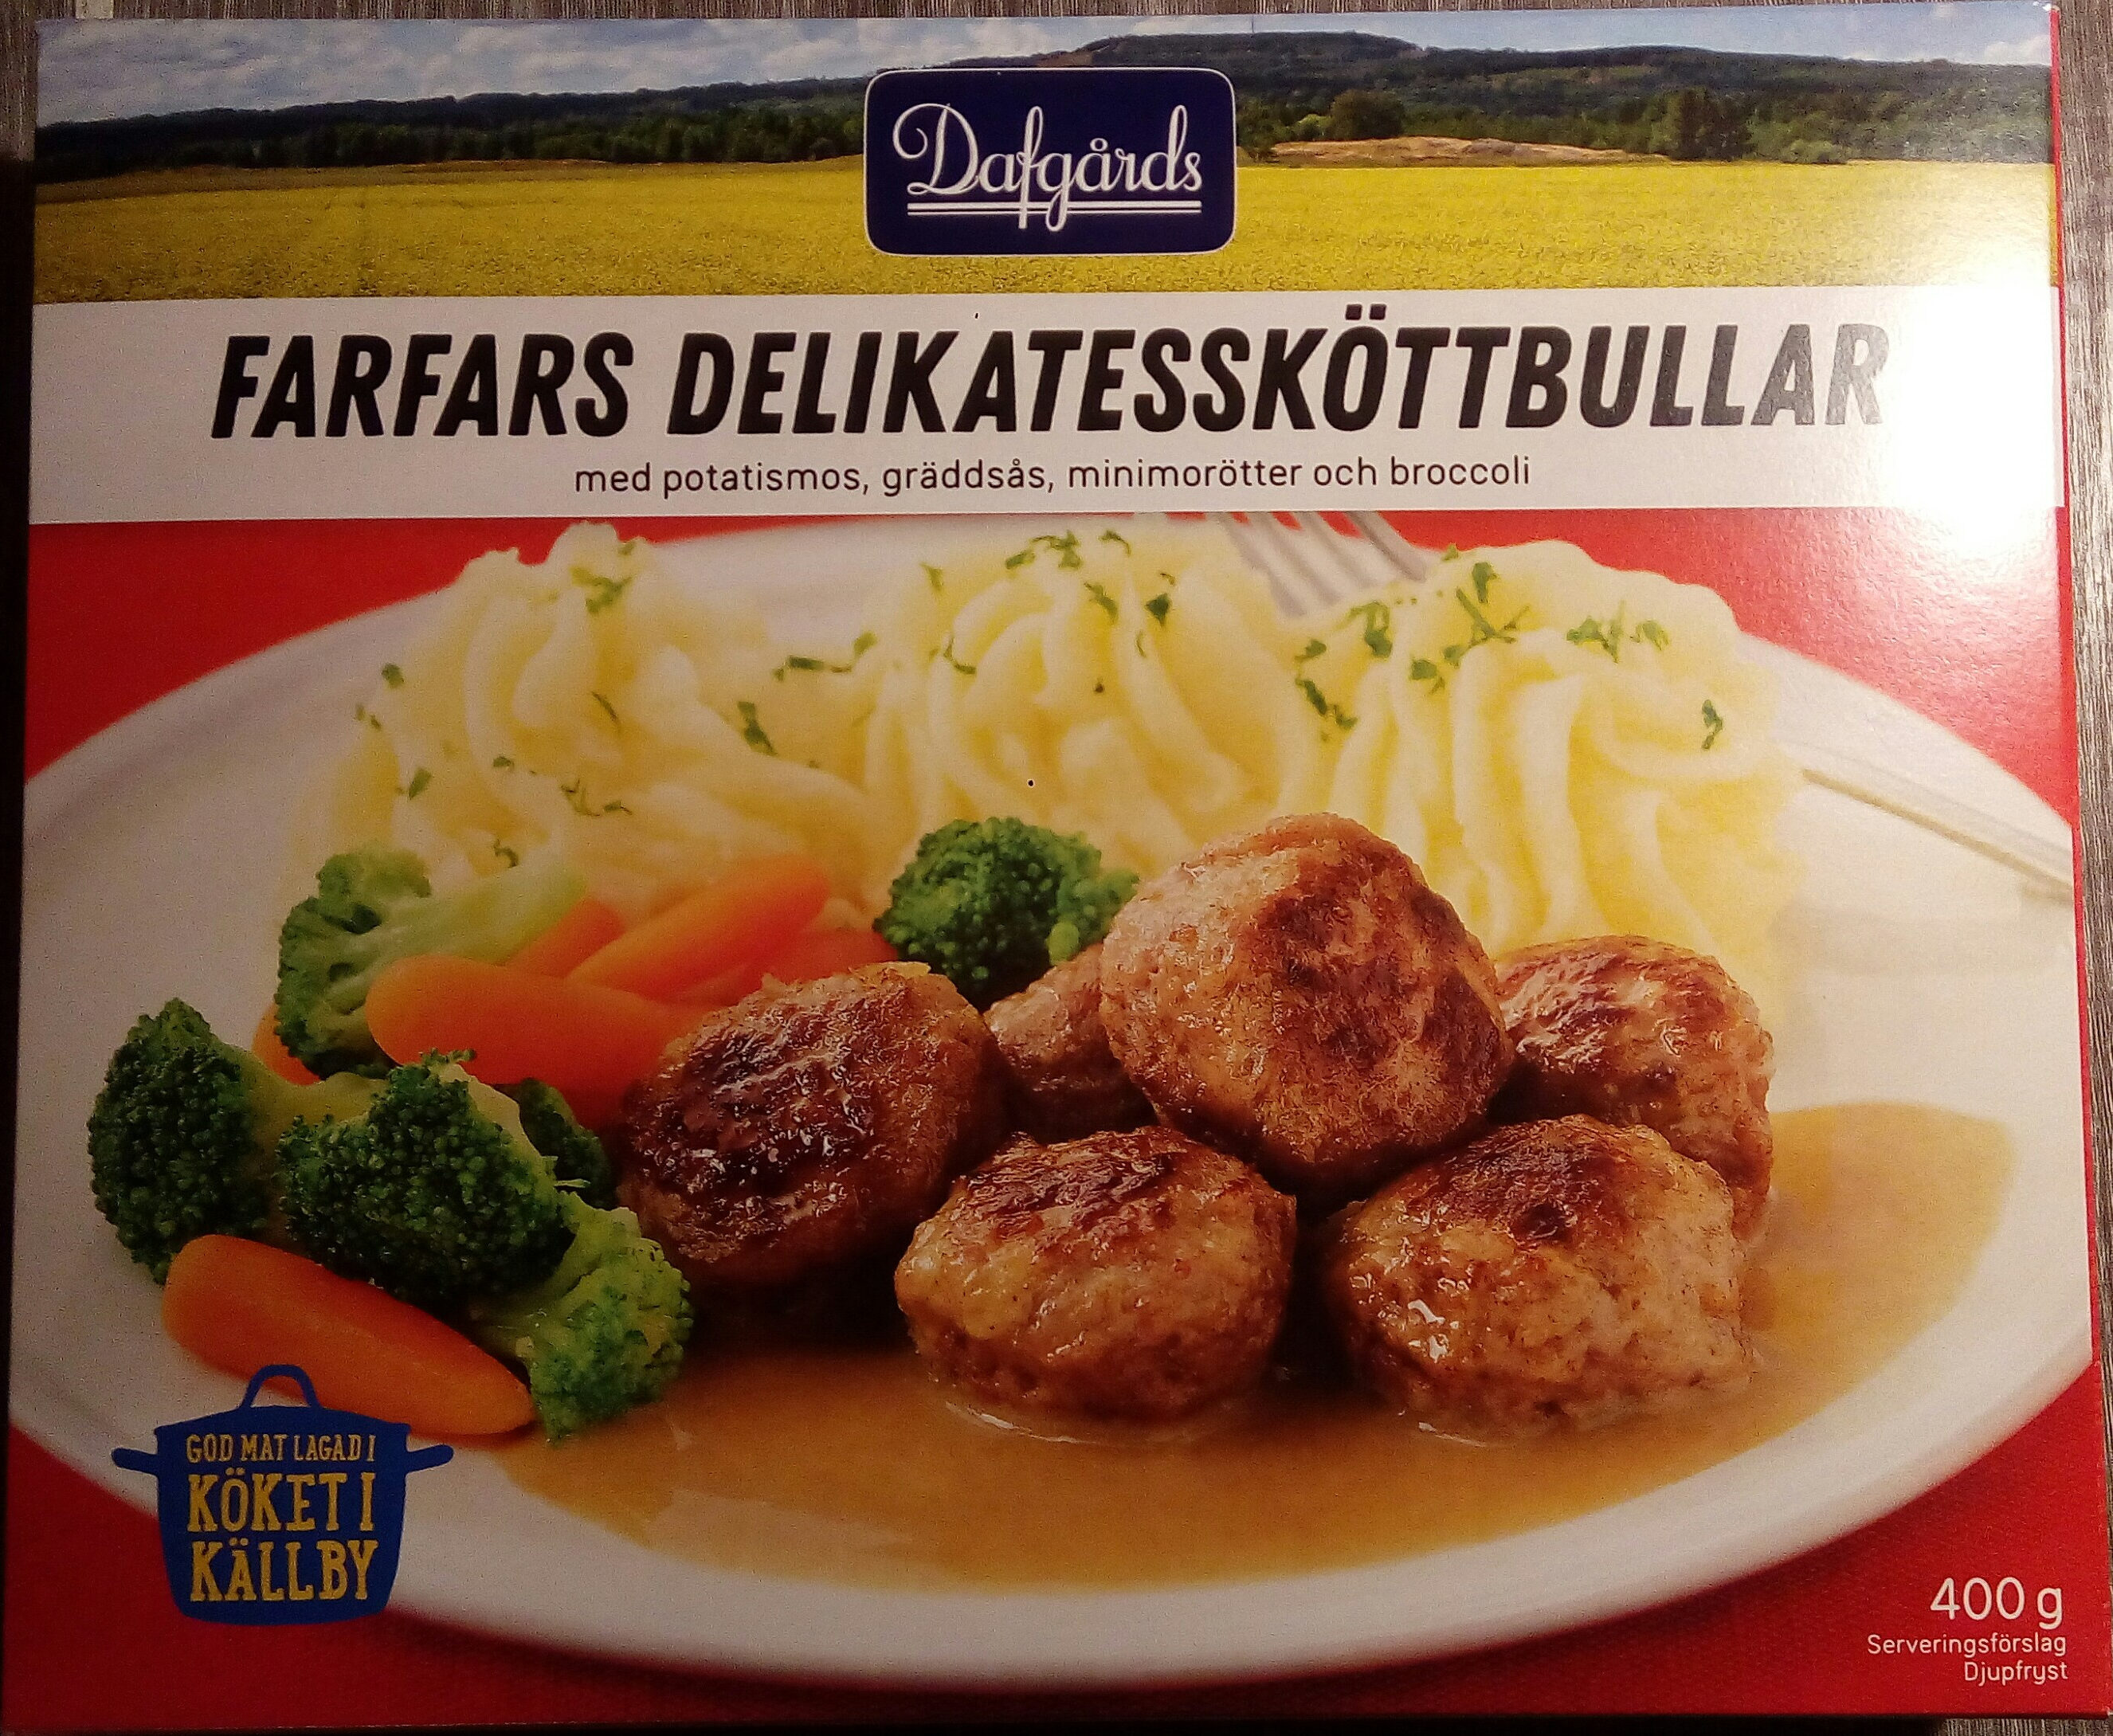 Dafgårds Farfars Delikatessköttbullar - Produkt